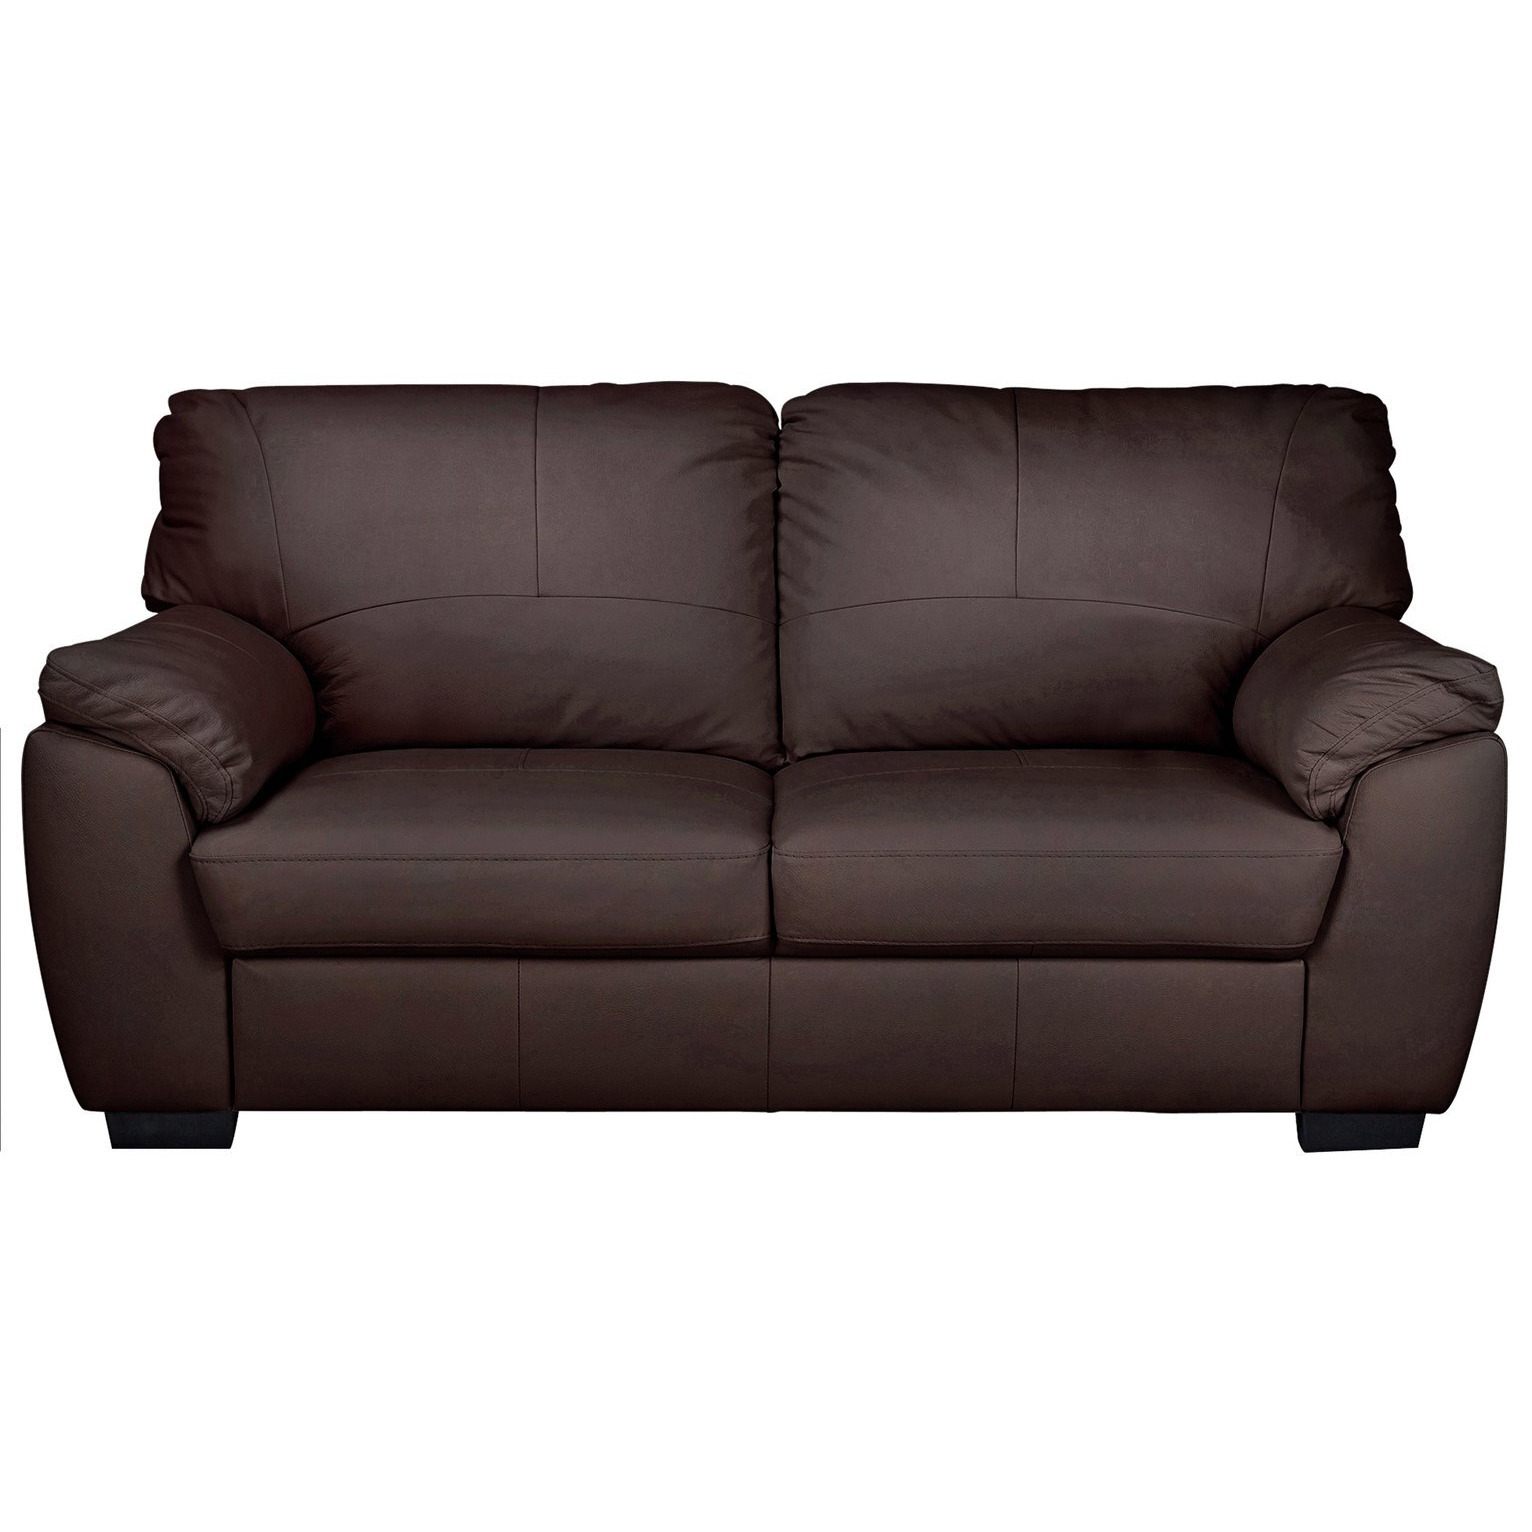 Argos Home Milano Leather 3 Seater Sofa